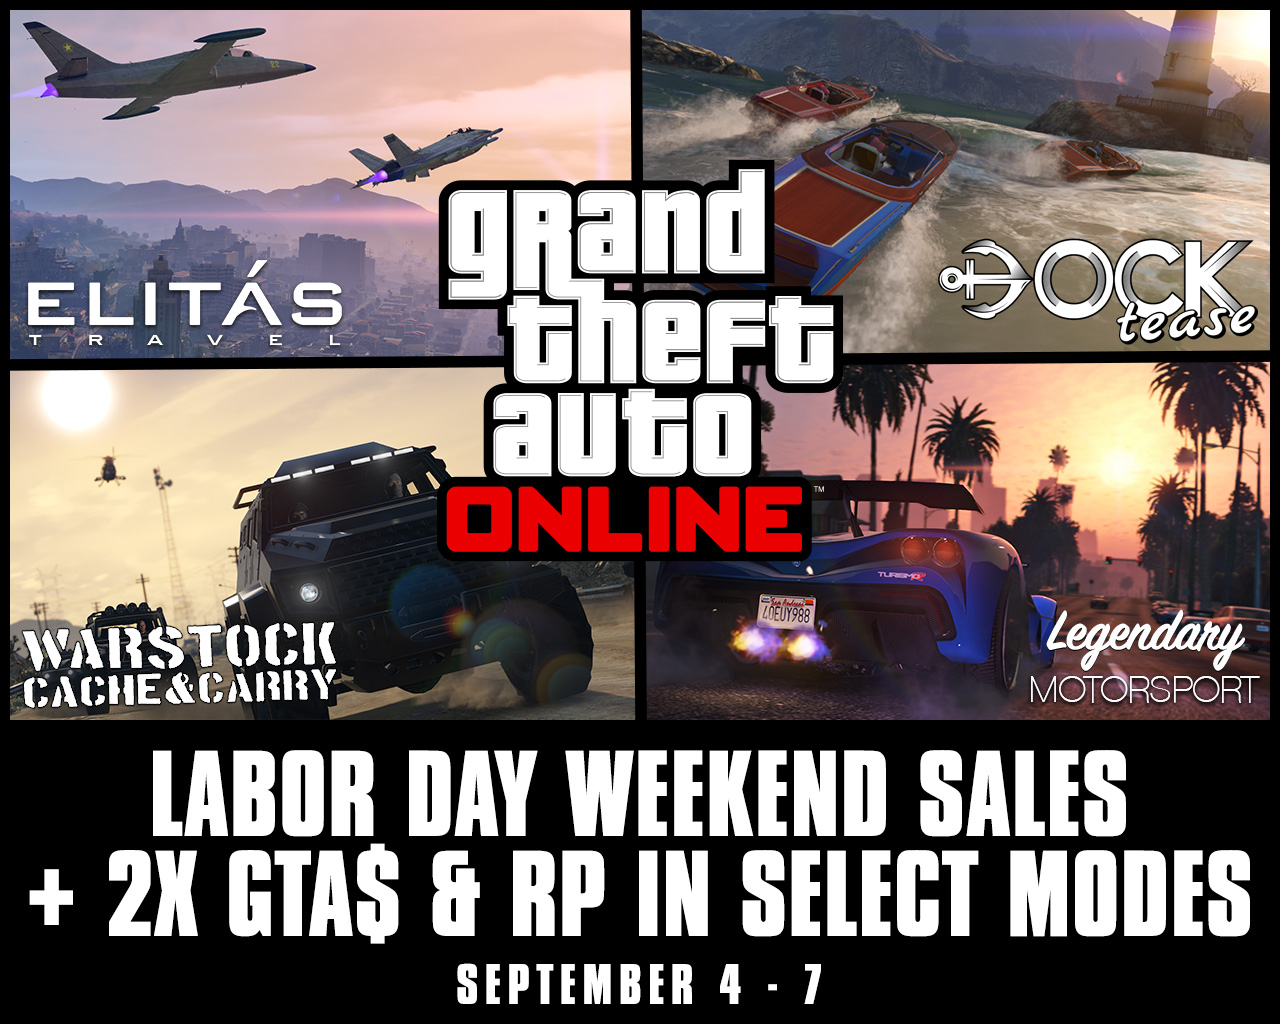 Labor Day Weekend Sales Plus Bonus Gta Rp In Gta Online September 4th 7th Rockstar Games